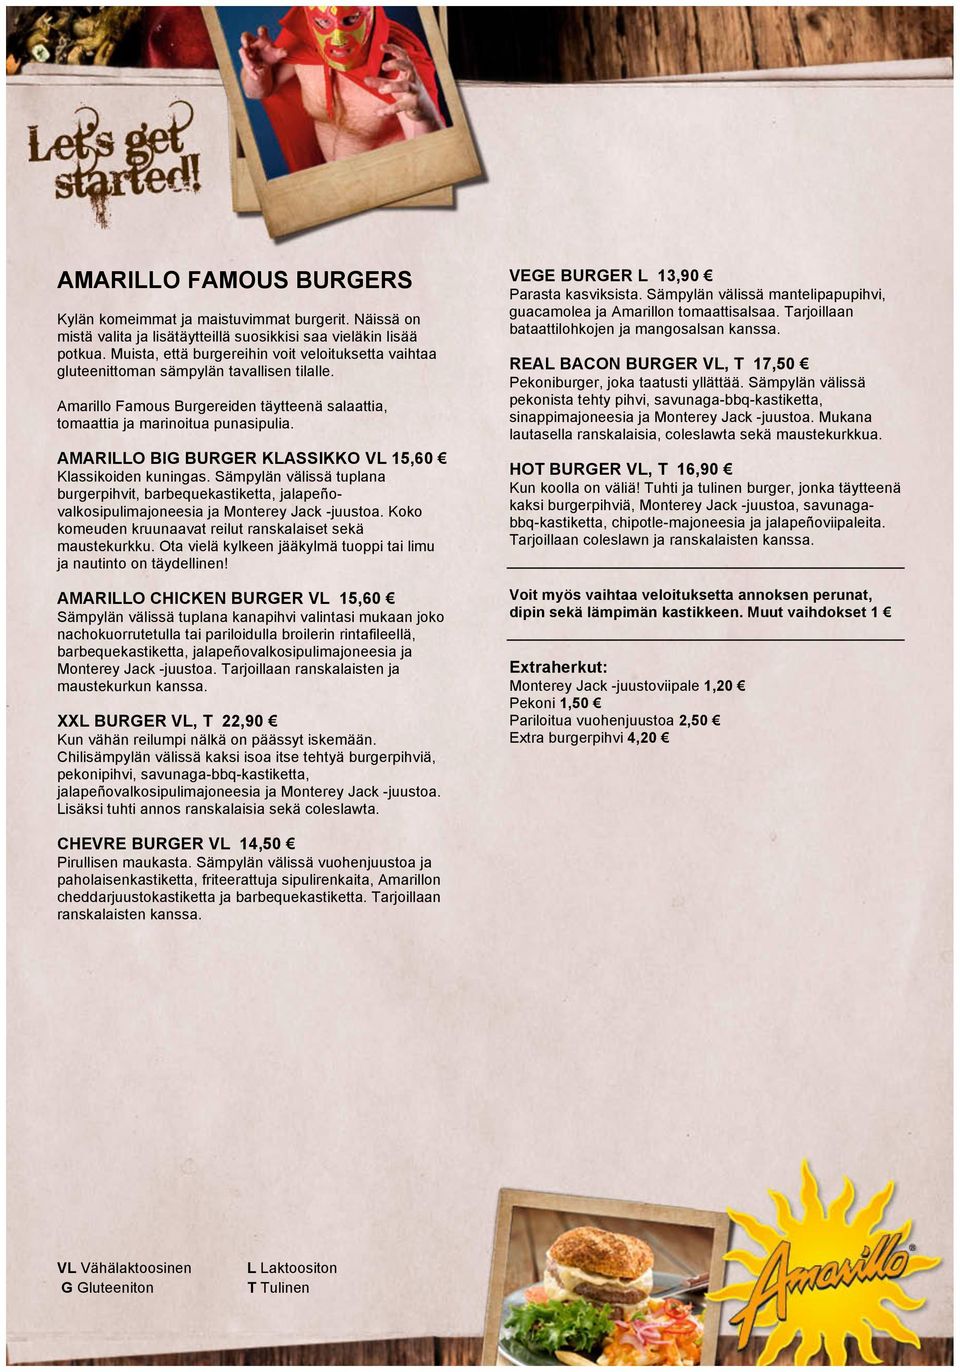 AMARILLO BIG BURGER KLASSIKKO VL 15,60 Klassikoiden kuningas. Sämpylän välissä tuplana burgerpihvit, barbequekastiketta, jalapeñovalkosipulimajoneesia ja Monterey Jack -juustoa.